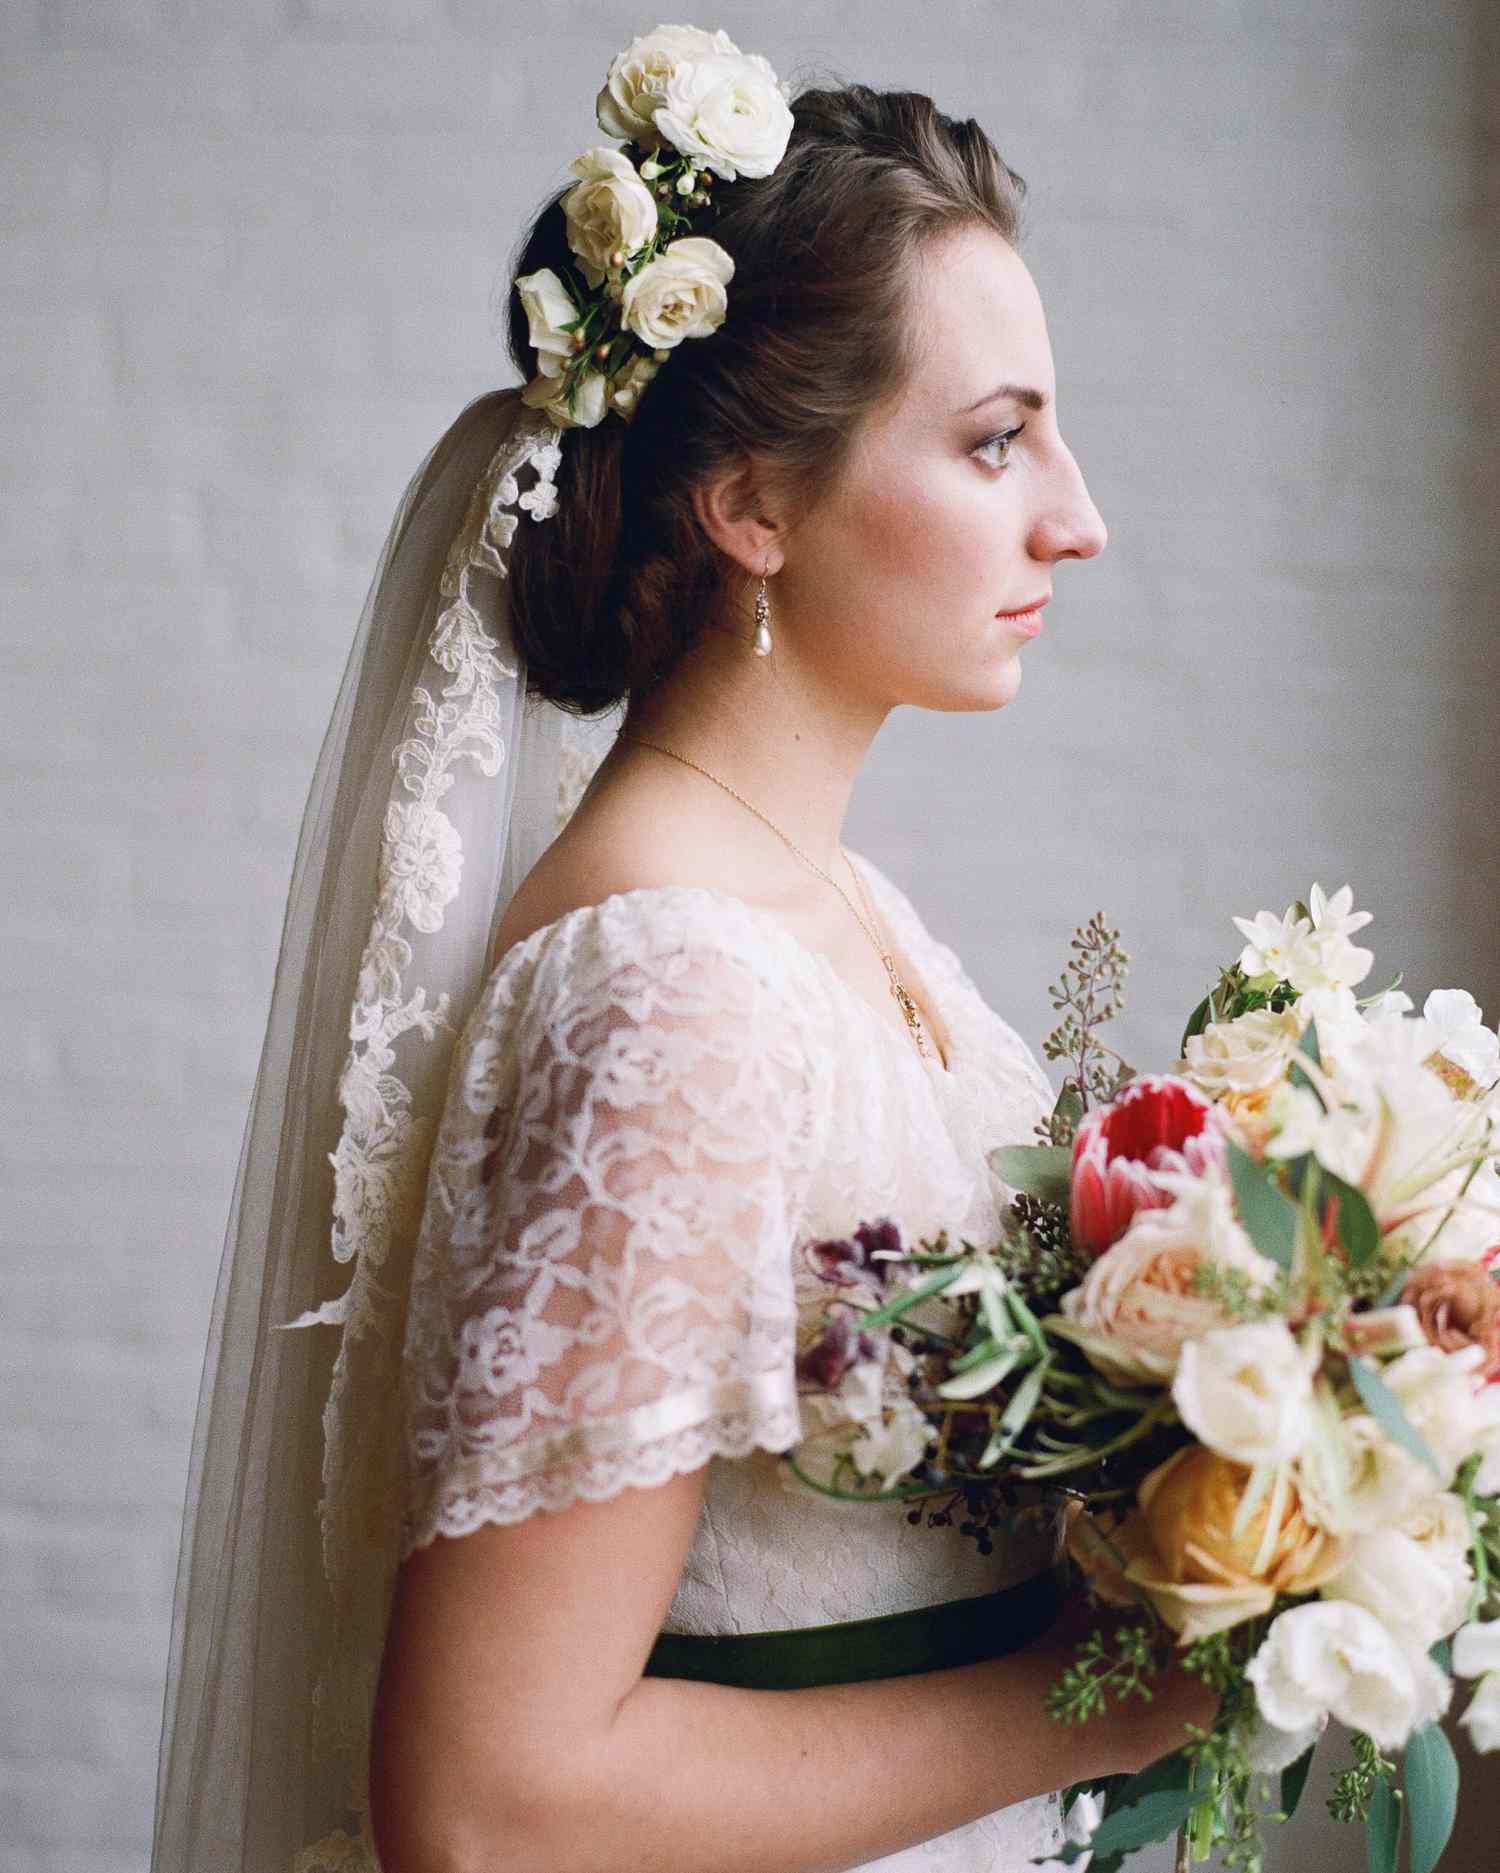 68 Flower Crown Ideas to Complete Your Wedding Hairstyle | Martha Stewart